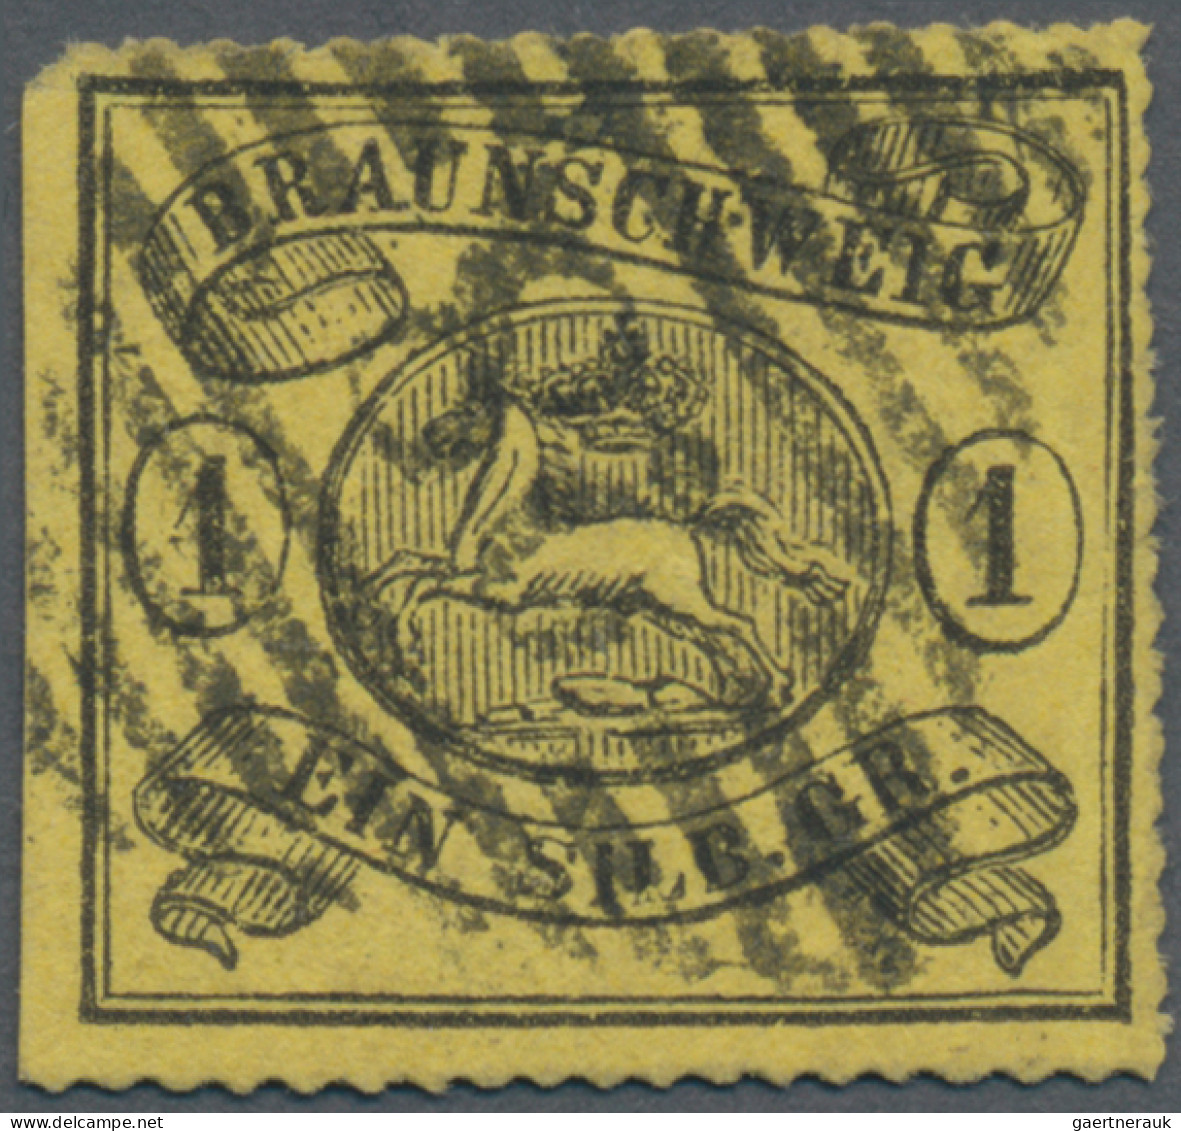 Braunschweig - Marken Und Briefe: 1864, 1 Sgr. Schwarz Auf Lebhaftgraugelb, Boge - Braunschweig